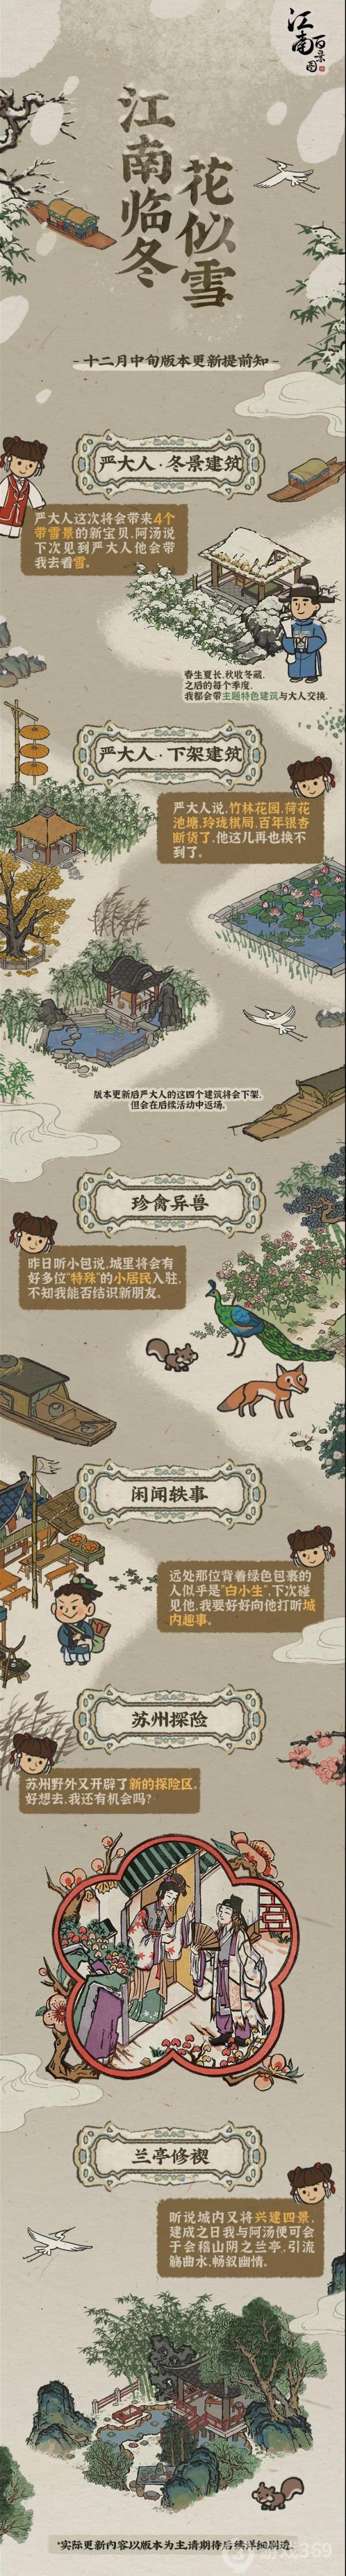 江南百景图12月更新版本预告一览